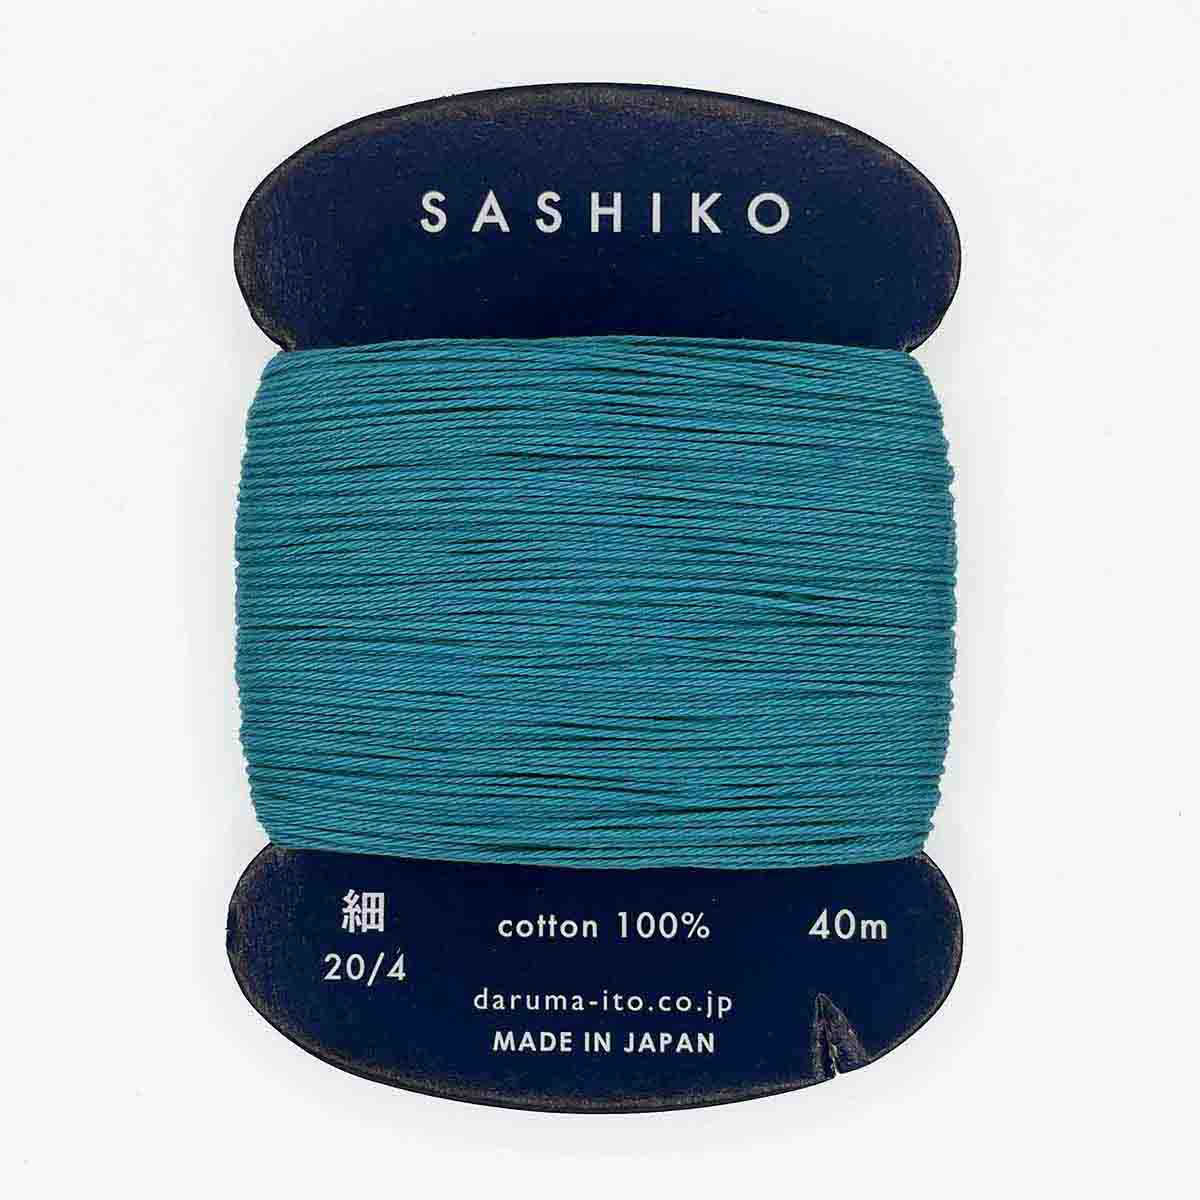 Daruma thin sashiko thread, dusty teal (#205) - Maydel